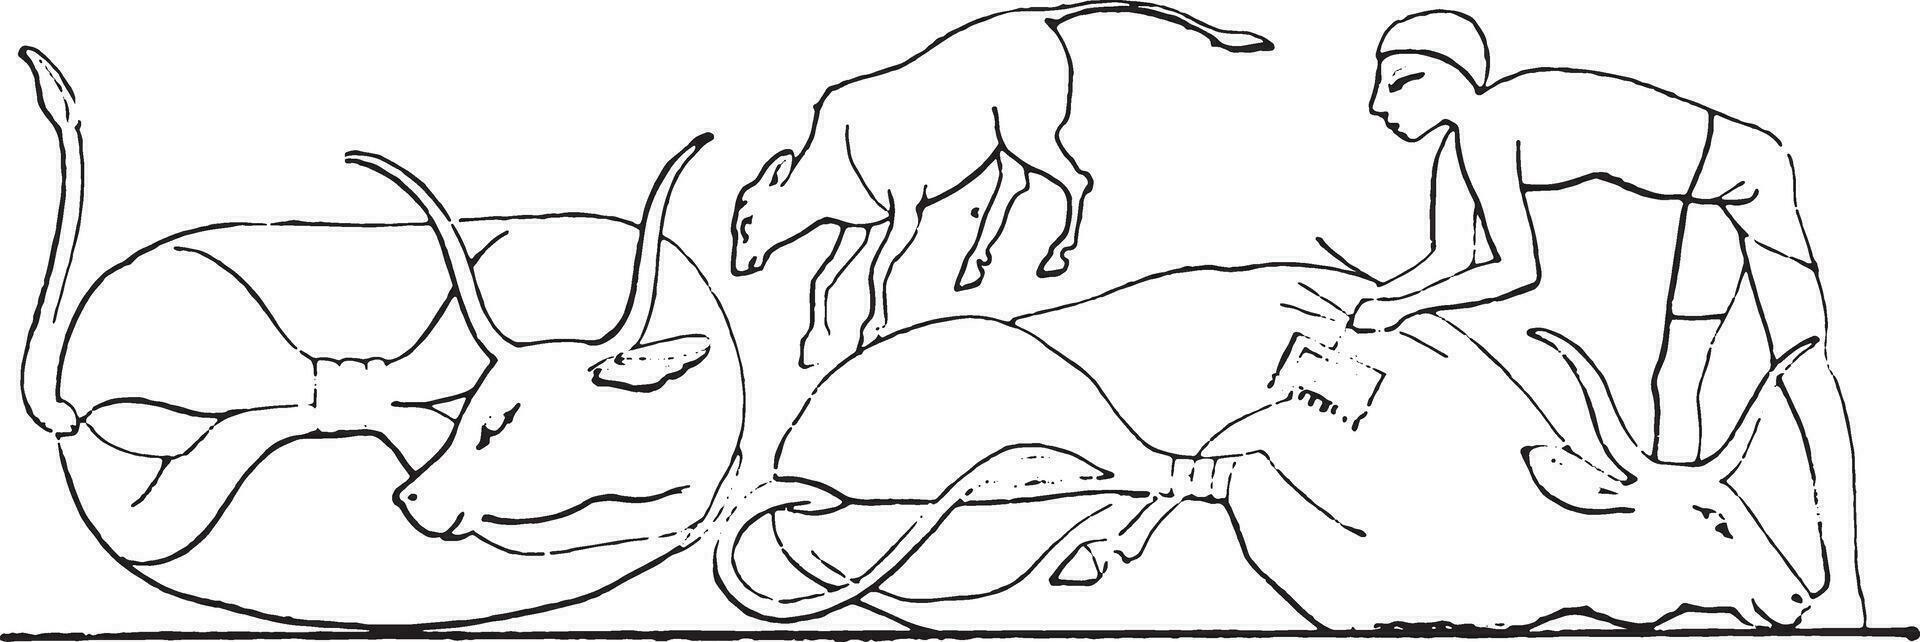 animaux marques avec un fer, ancien gravure. vecteur